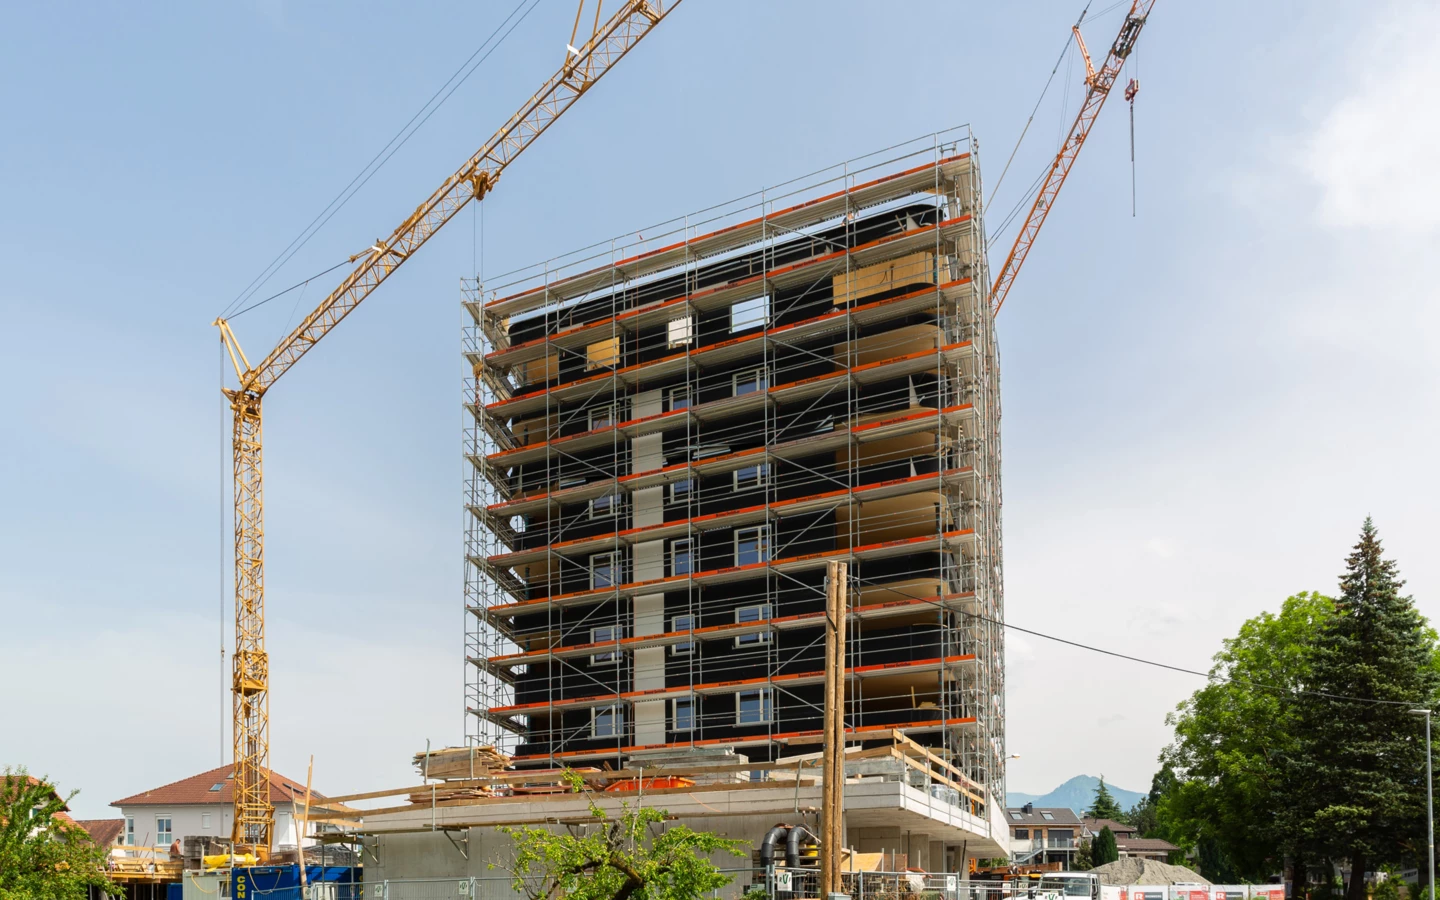 Höhepunkt erreicht: Das Errichten des kompletten, achtstöckigen Holzgebäudes im neuen Lustenauer „Rheindorf“ hat lediglich gut zwei Wochen gedauert.